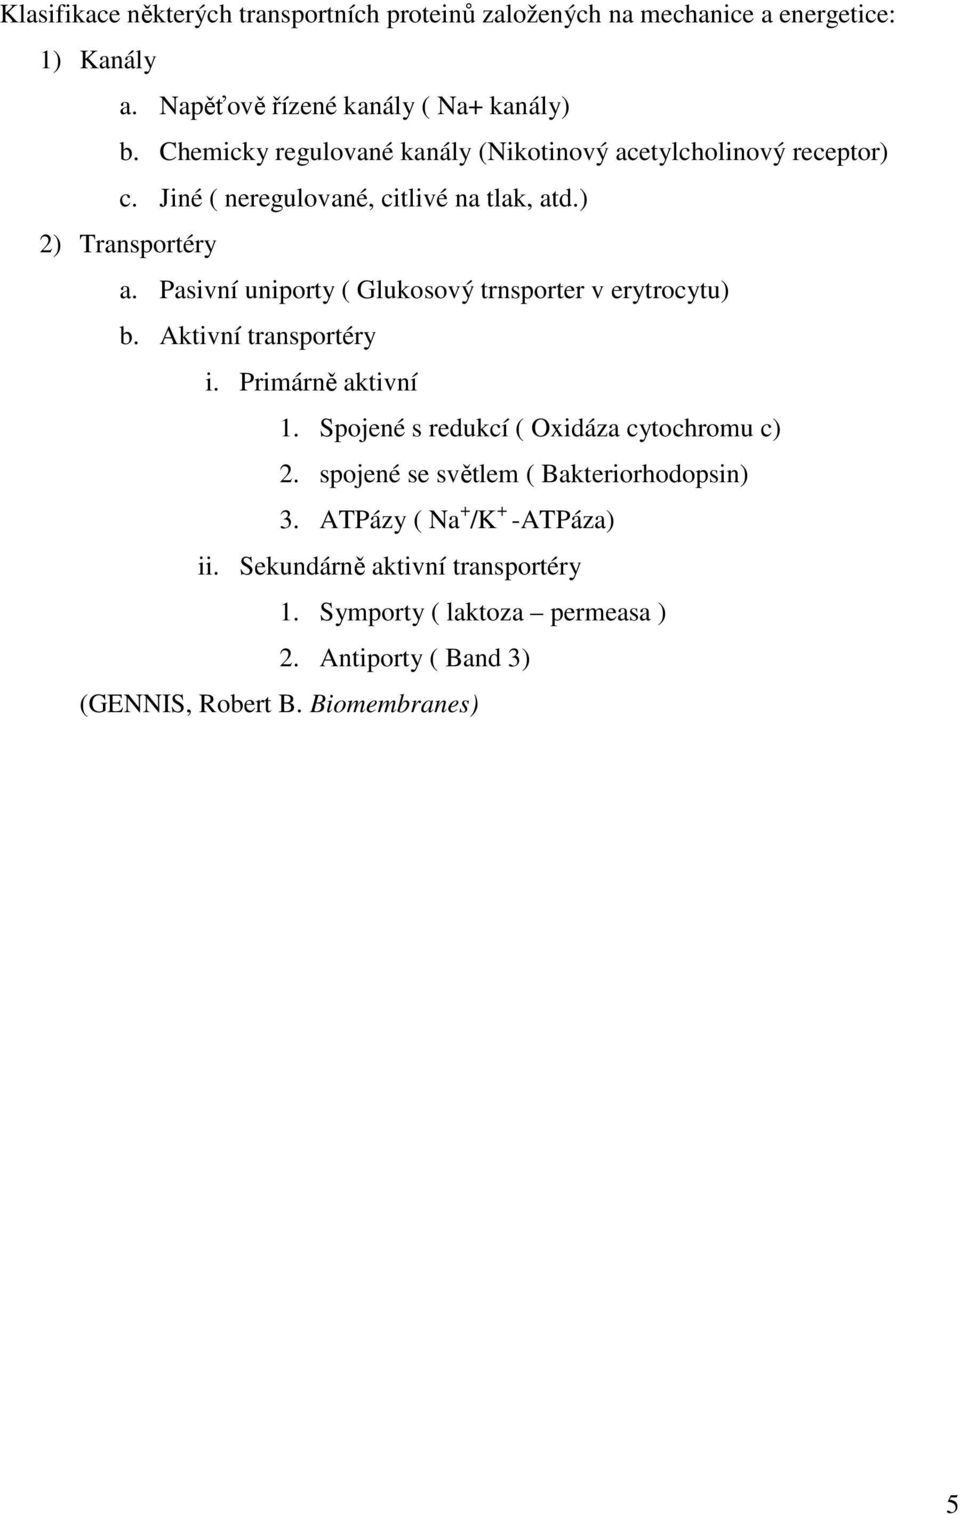 Pasivní uniporty ( Glukosový trnsporter v erytrocytu) b. Aktivní transportéry i. Primárně aktivní 1. Spojené s redukcí ( Oxidáza cytochromu c) 2.